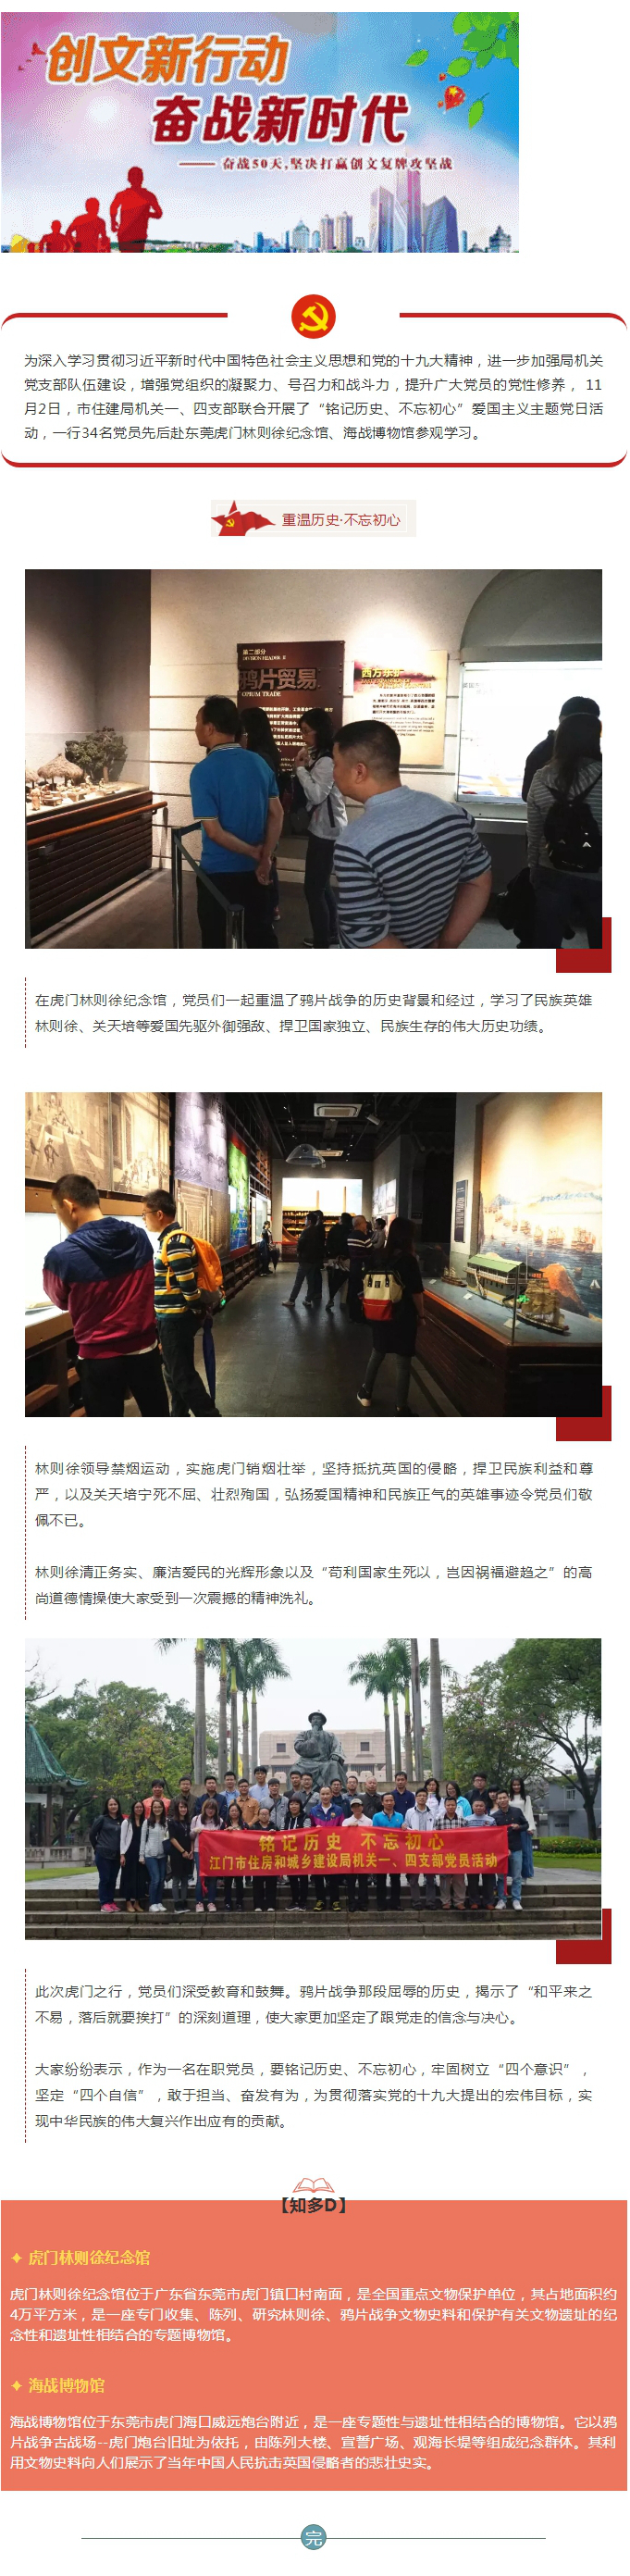 党日活动：34名党员赴林则徐纪念馆开展爱国主义教育活动.jpg